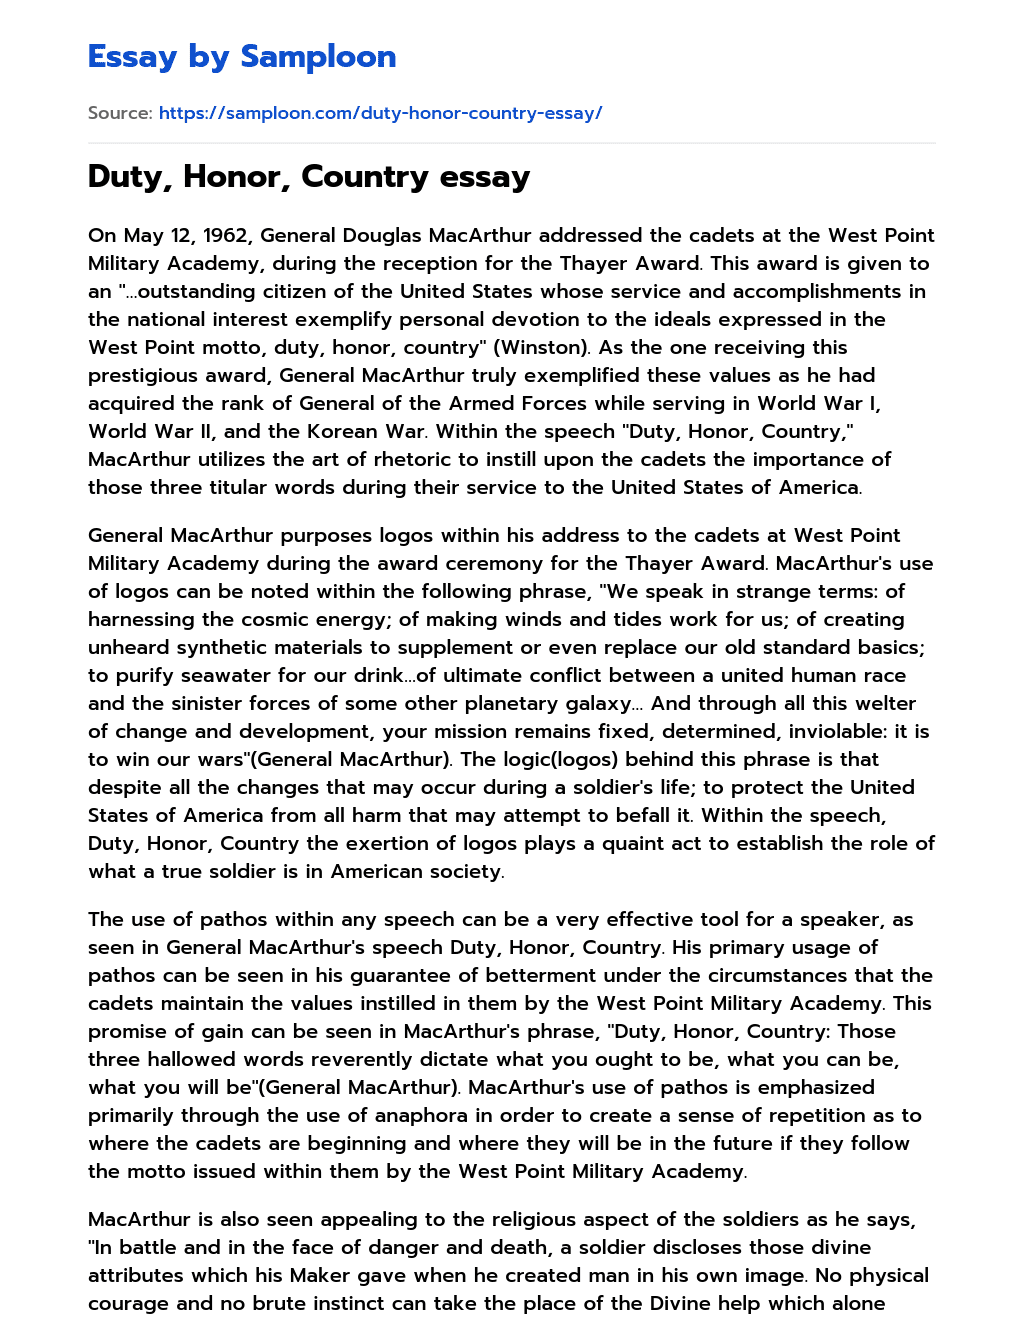 Duty, Honor, Country essay Summary essay